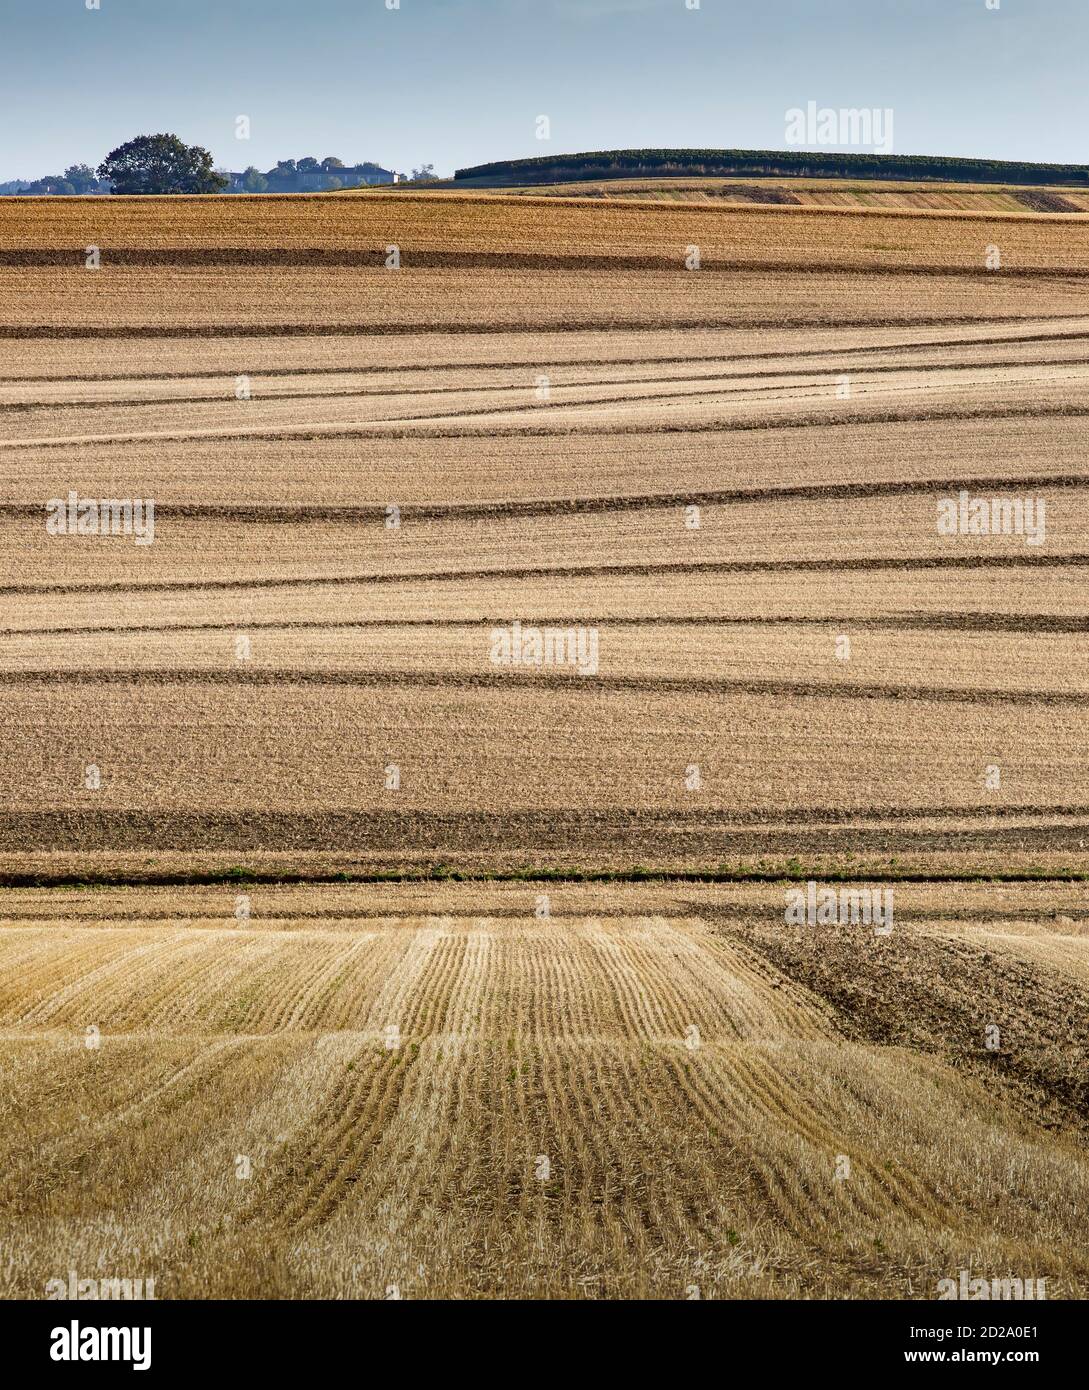 Un paysage agricole de collines douces qui sont typiques de la région de Gers dans le sud-ouest de la France. Banque D'Images